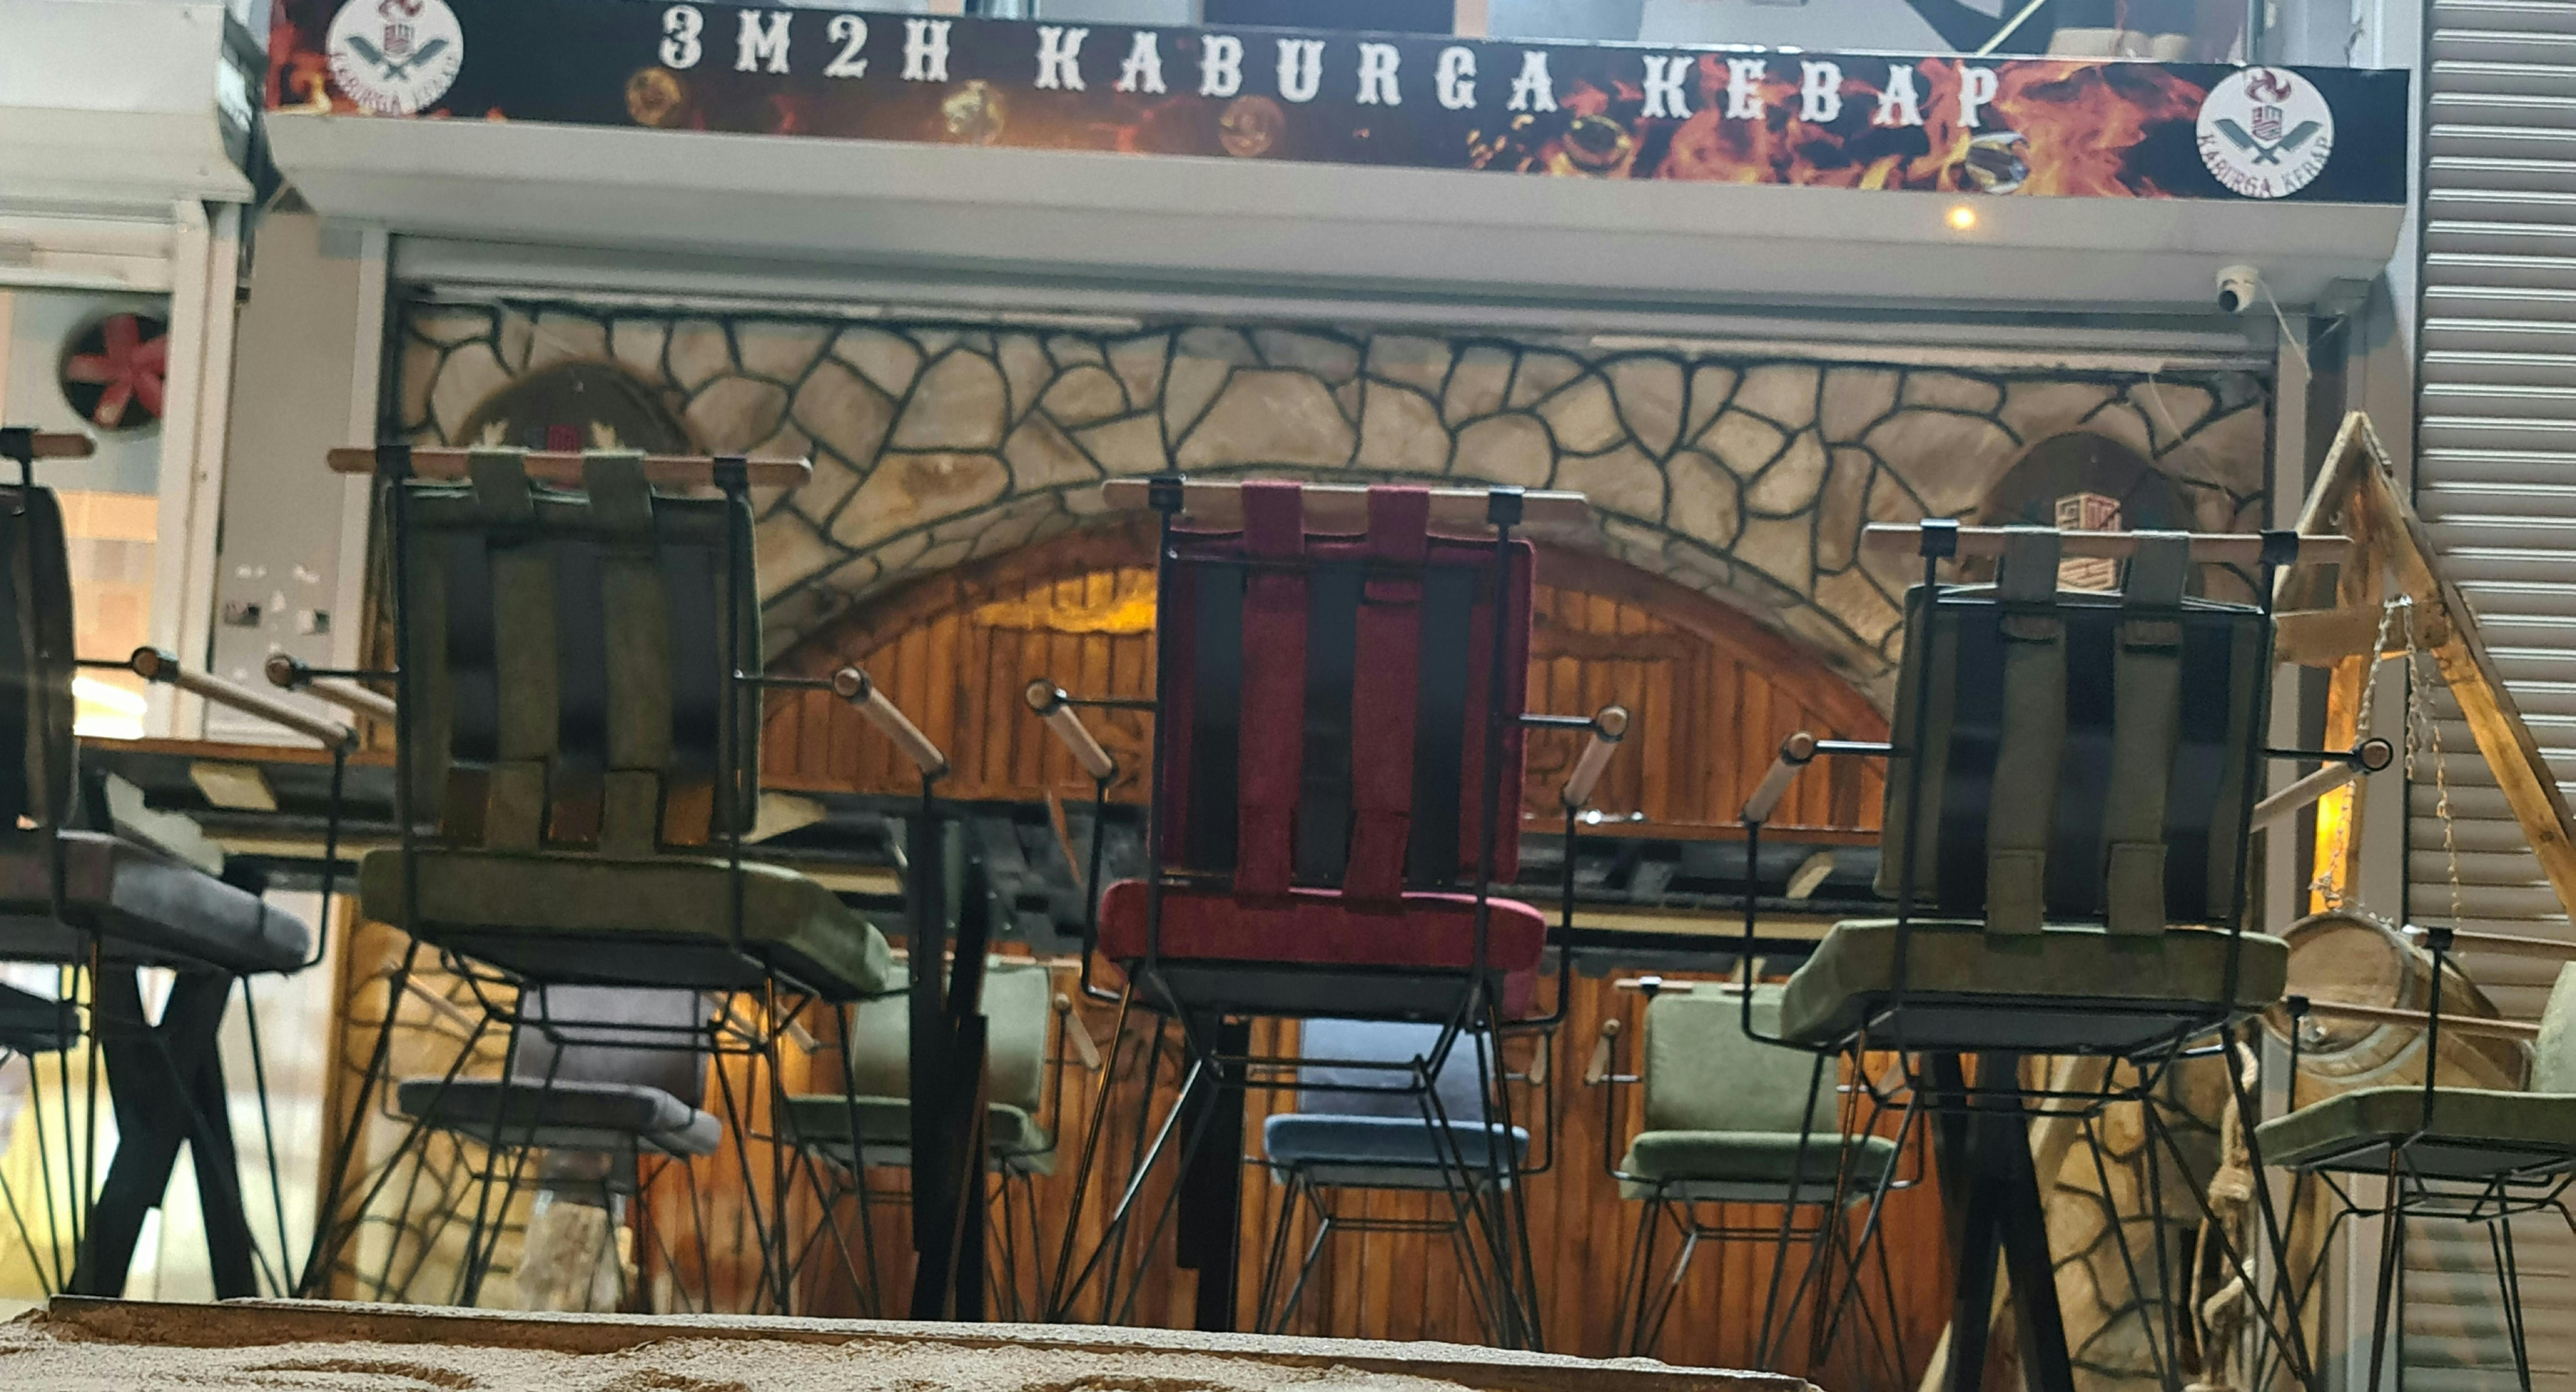 Bahçelievler, Merkez şehrindeki Kaburga Kebap 3m2h restoranının fotoğrafı